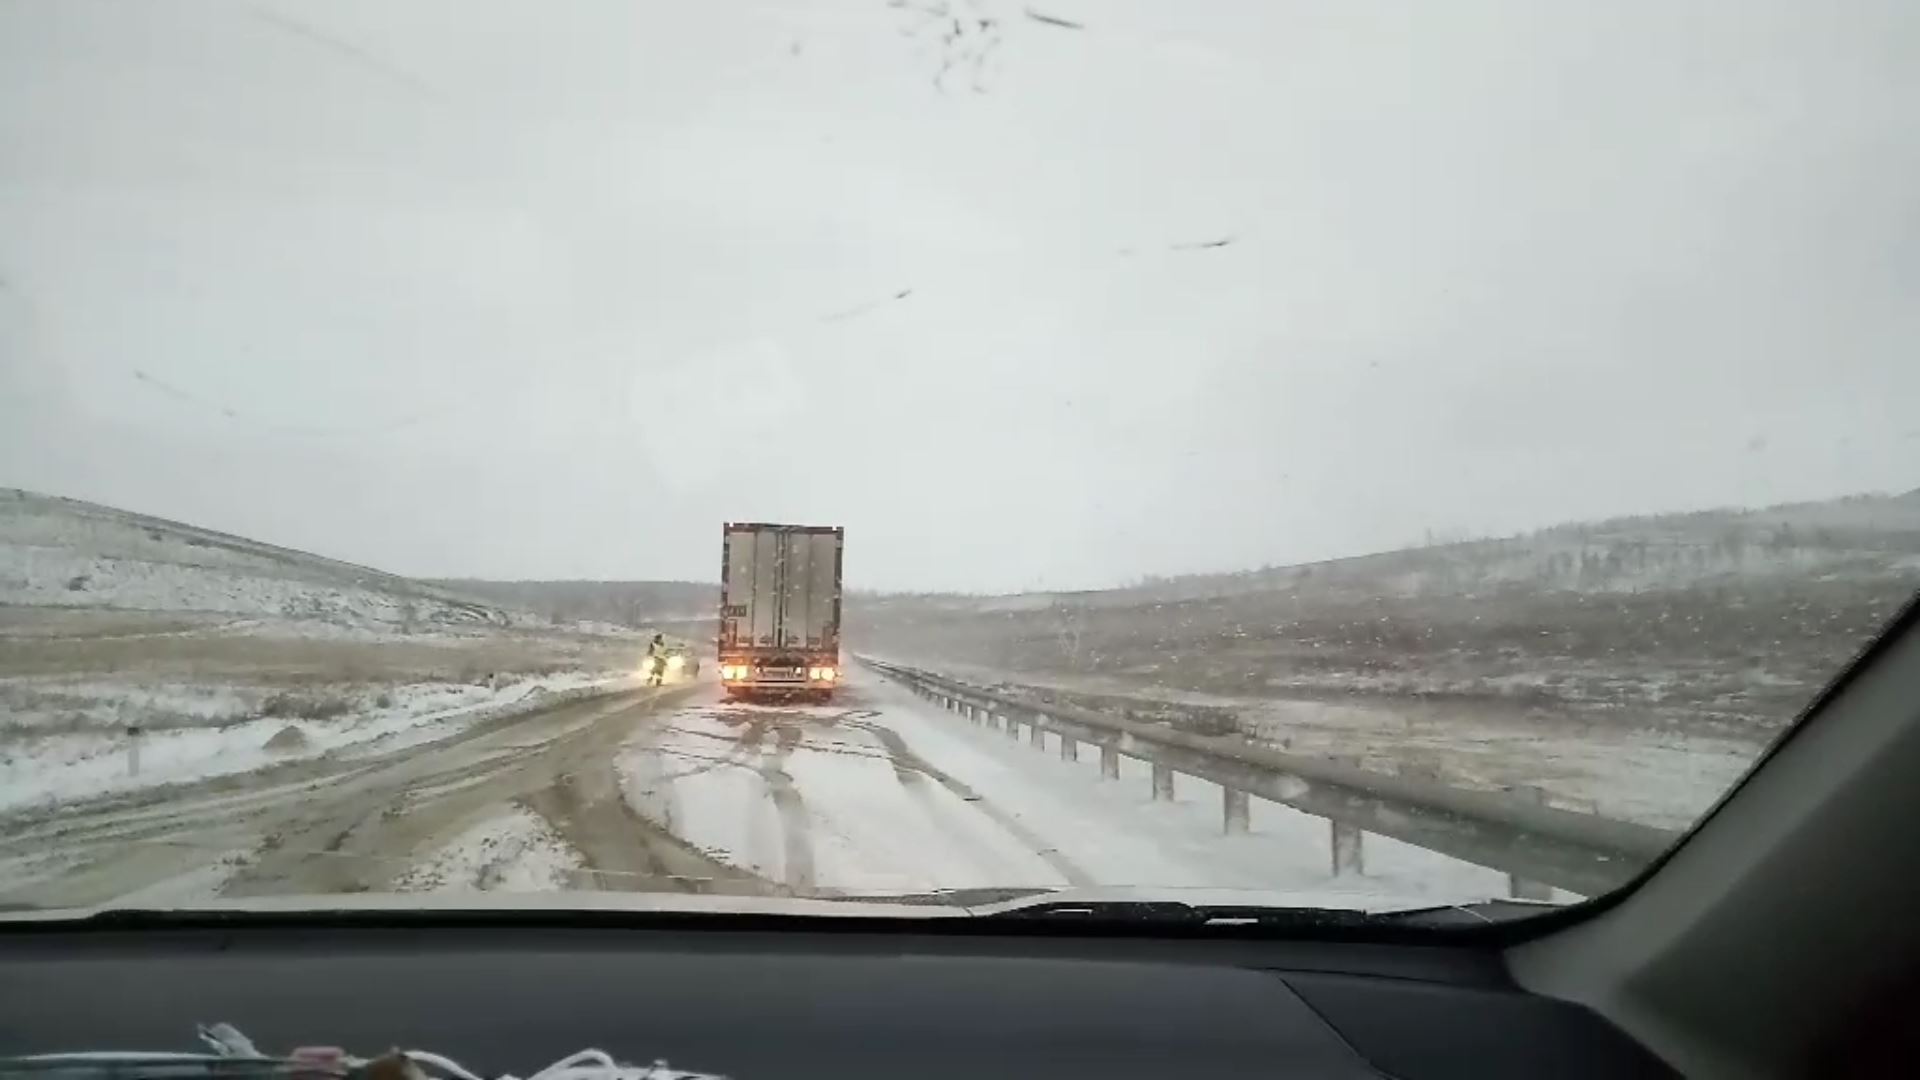 Из-за снега дальнобойщики не могут преодолеть перевал в Забайкалье (видео)